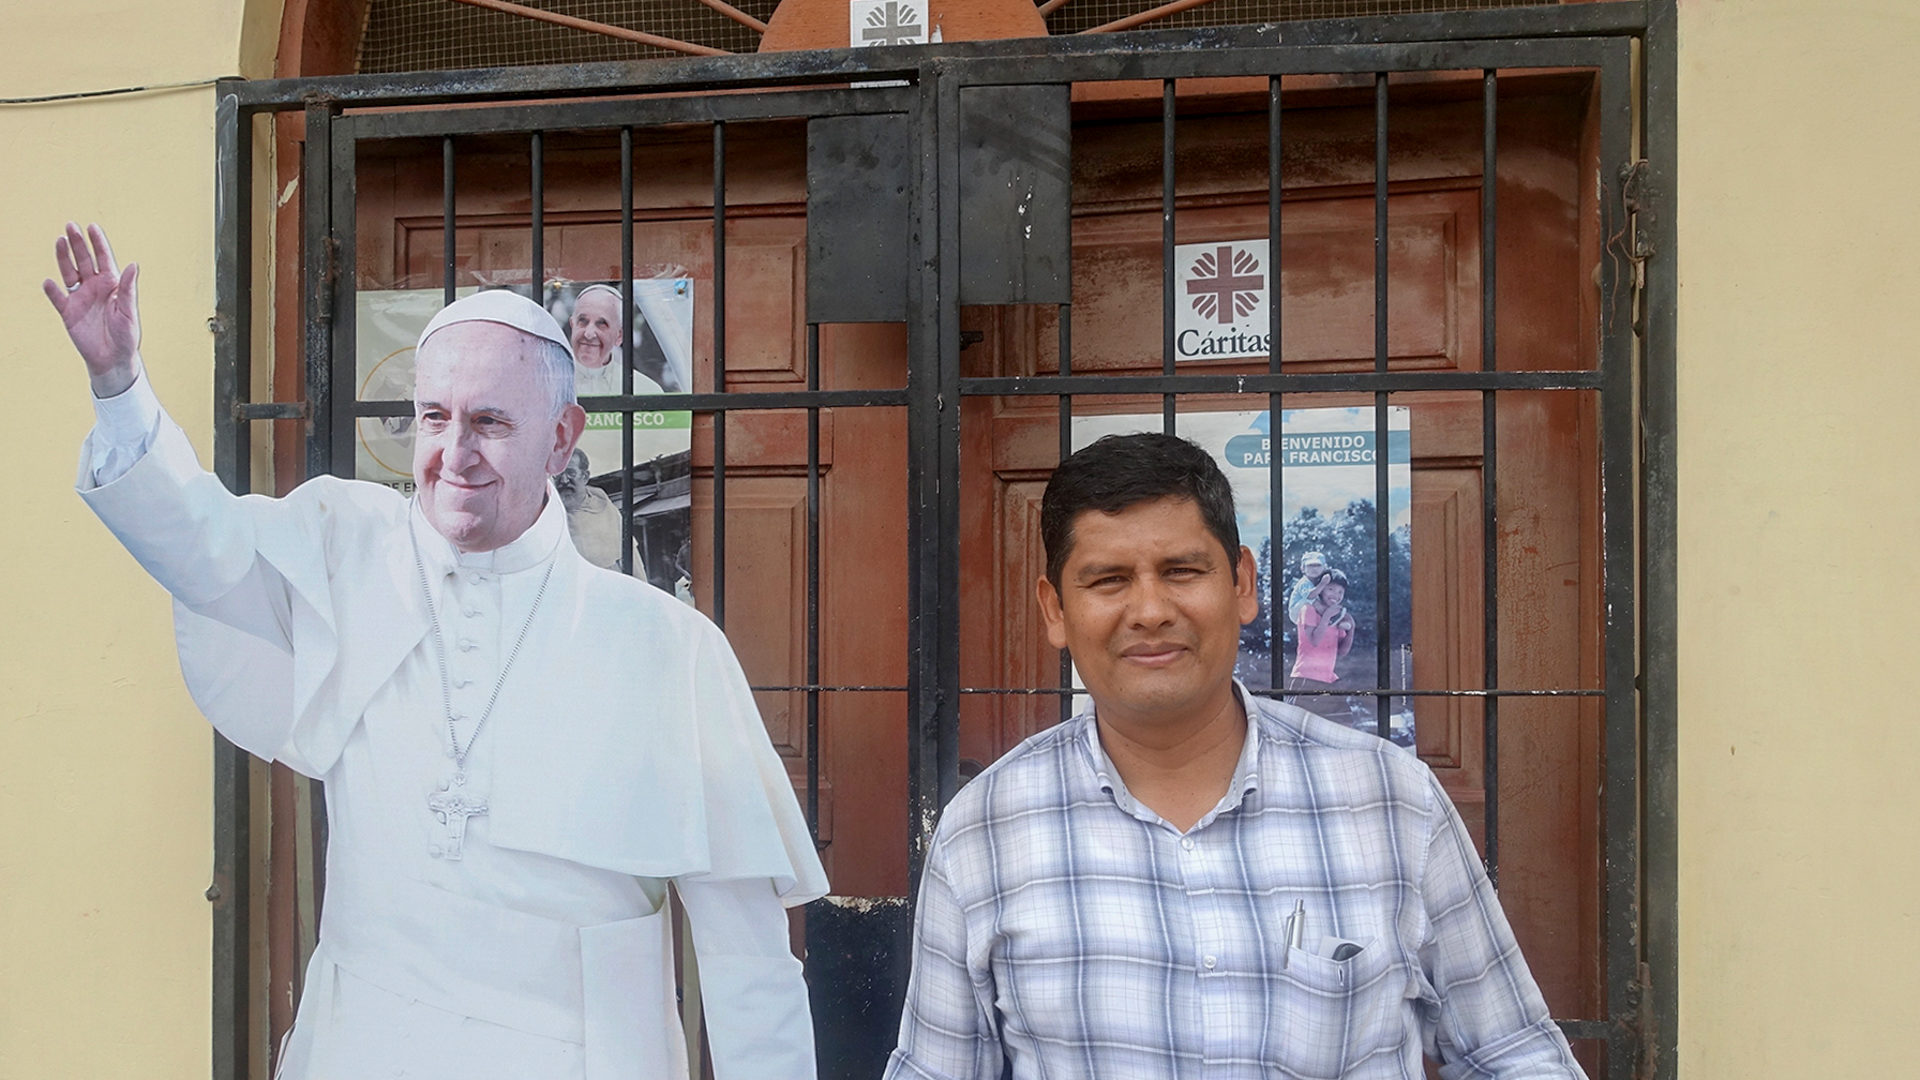 Juan Carlos Navarro Vega, directeur de Caritas à Puerto Maldonado, attend le pape avec impatience | ©Jean-Claude Gerez